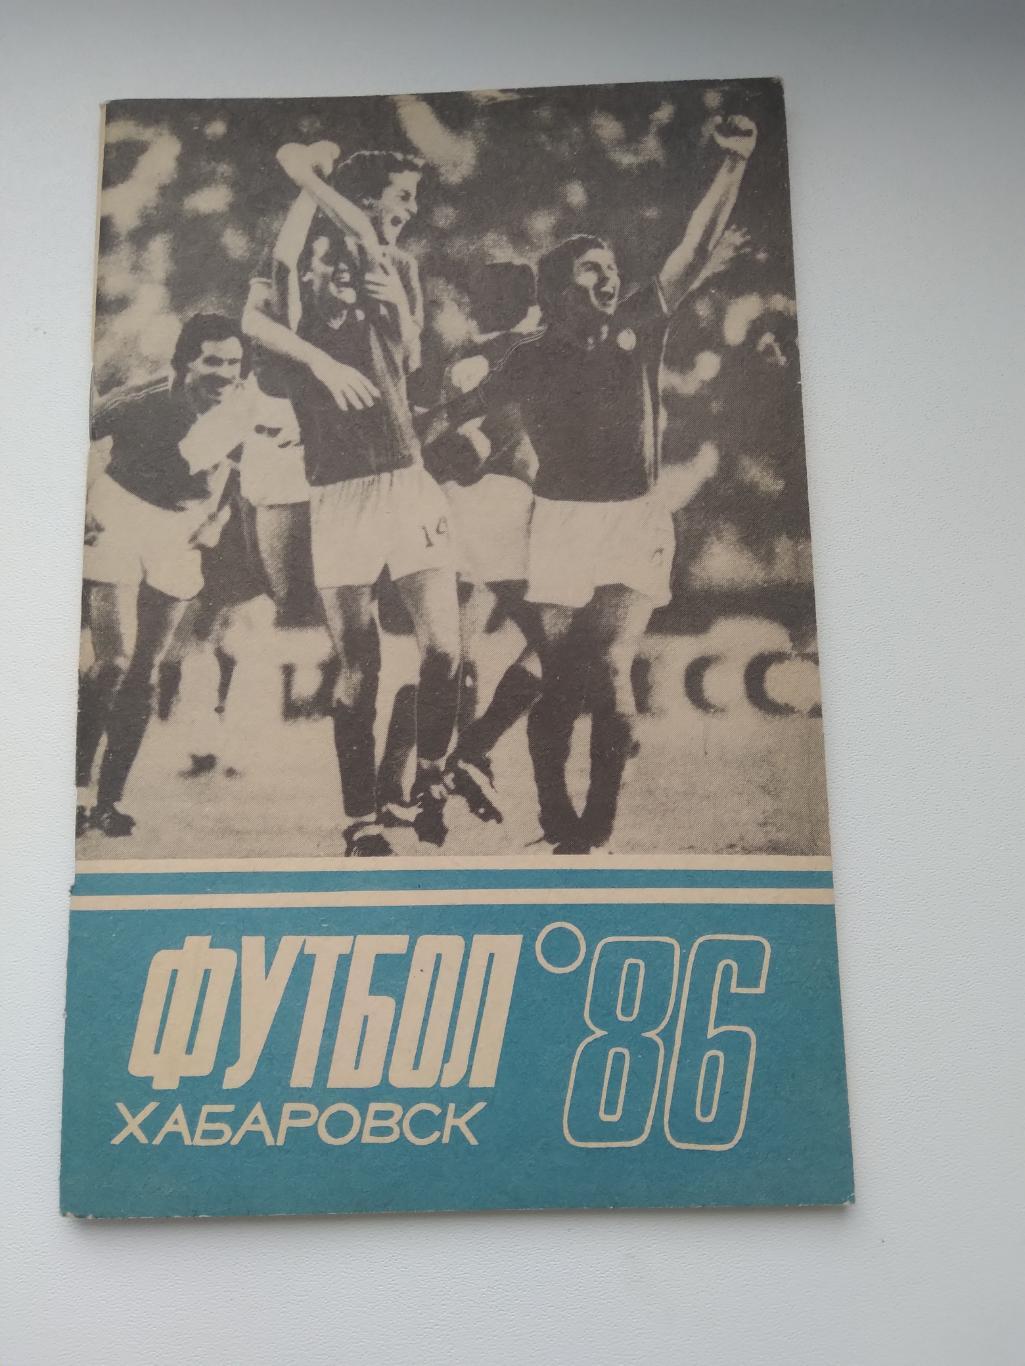 Справочник-календарь футбол-86 ХАБАРОВСК